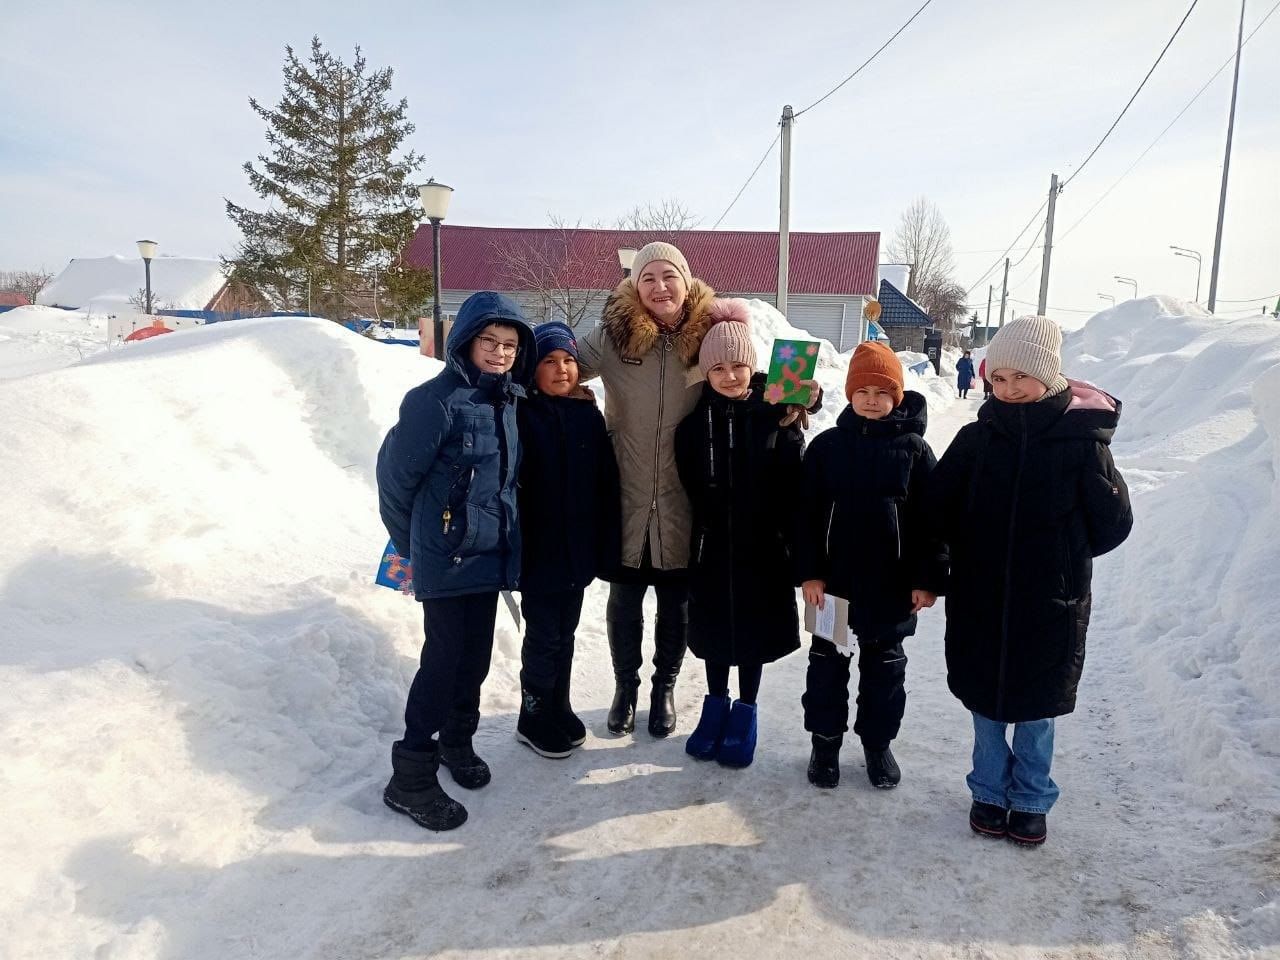 Ученики Именьковской школы Лаишевского района поздравили женщин с праздником